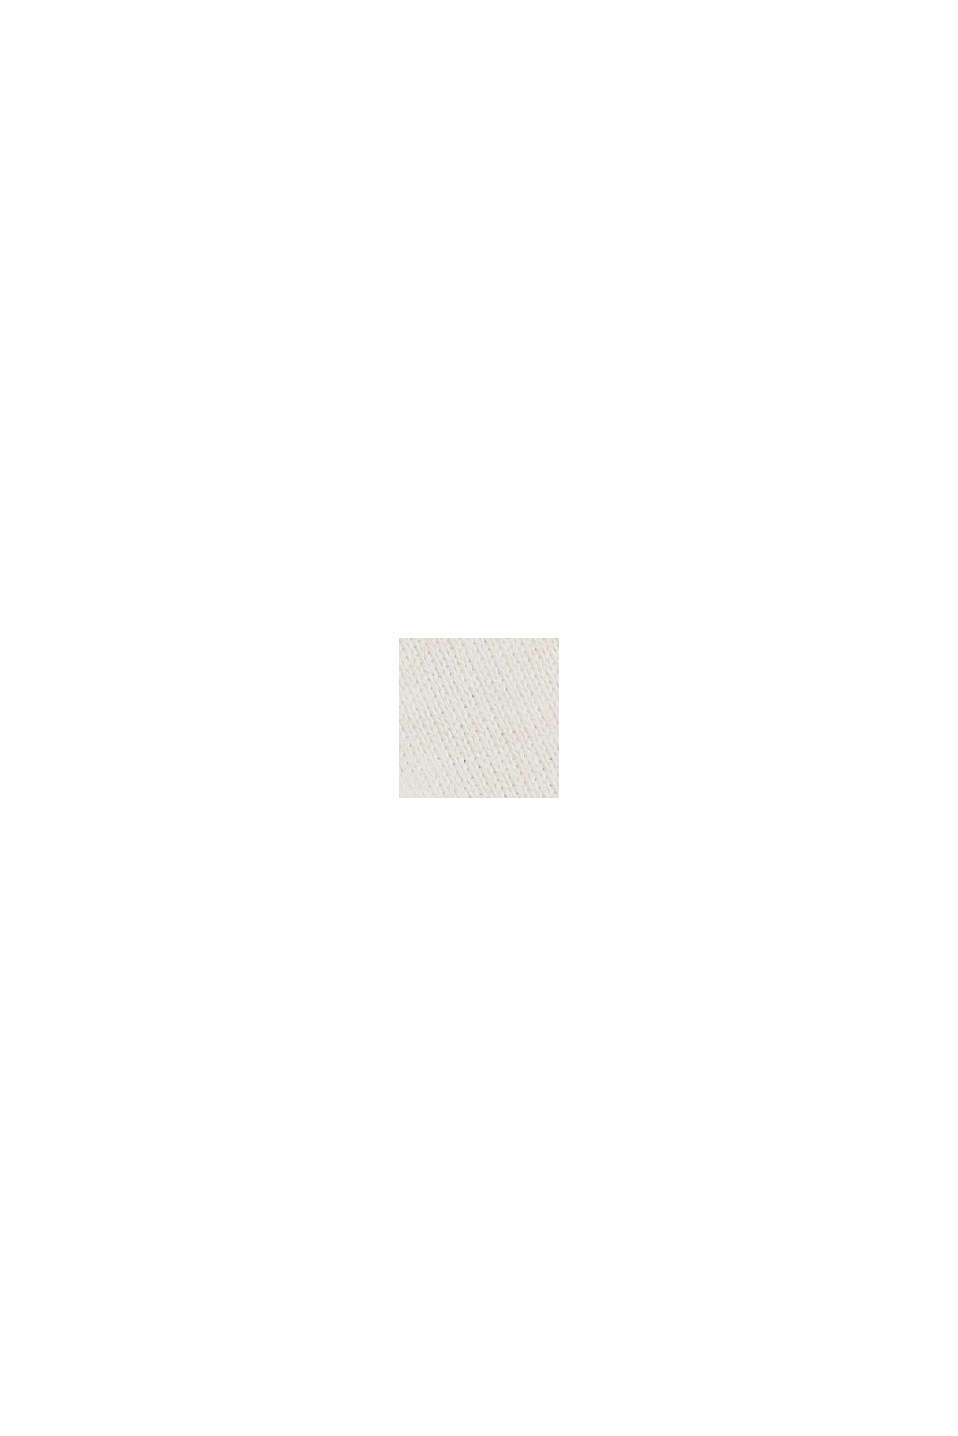 Jersey con cuello de cremallera y diseño de punto texturizado, algodón ecológico, OFF WHITE, swatch